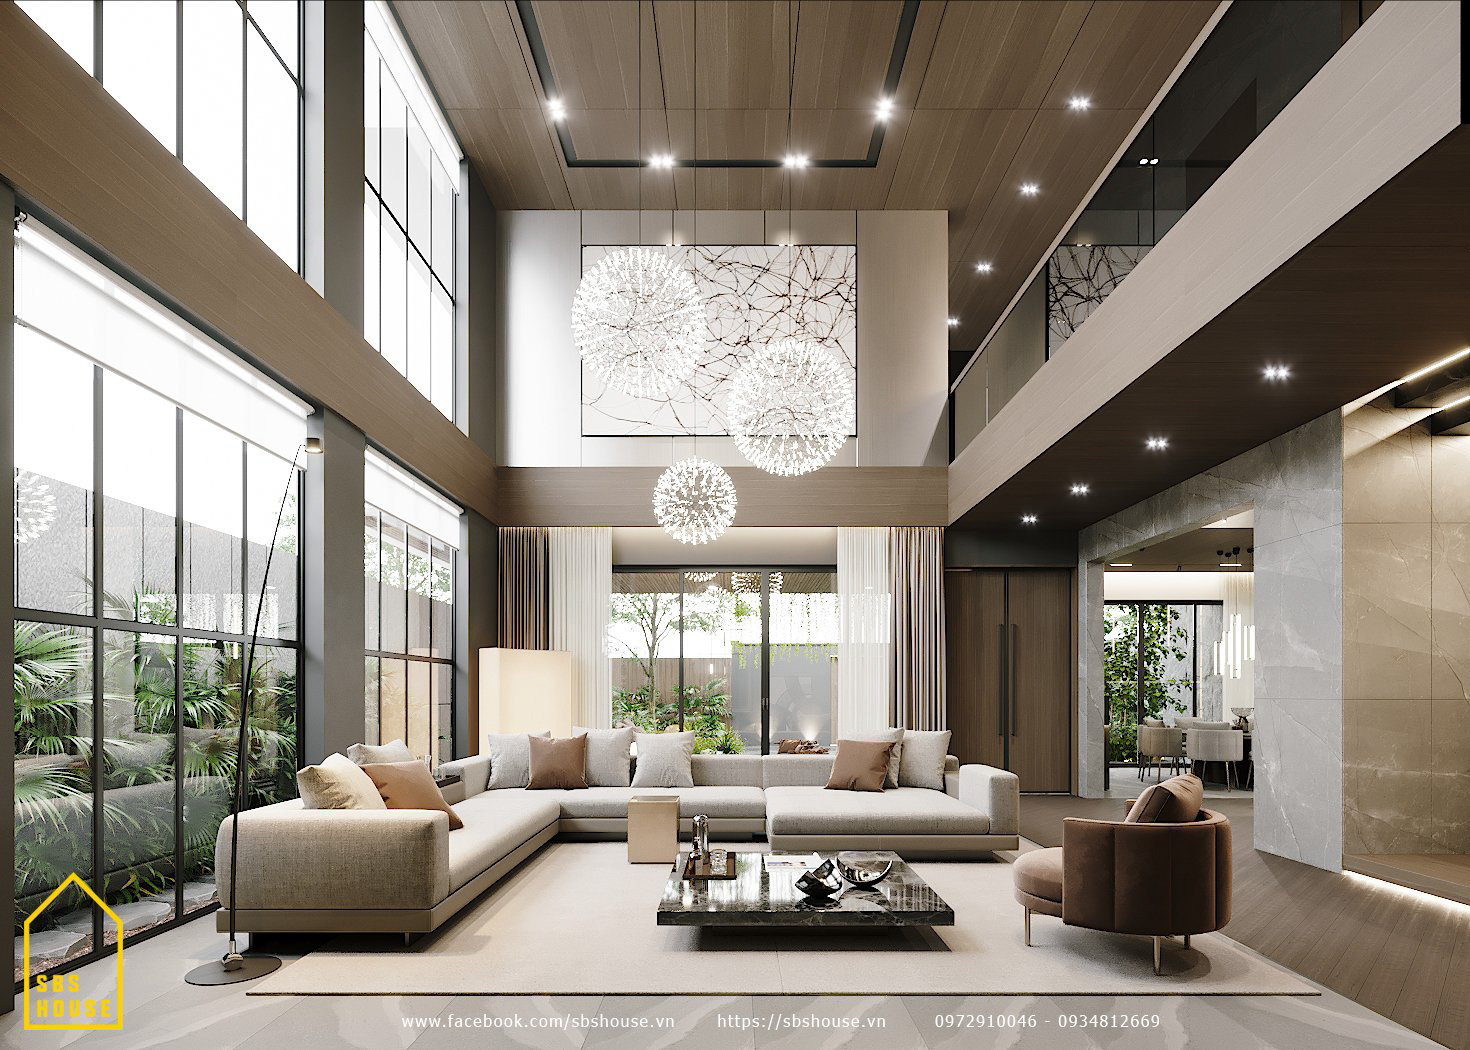 101 mẫu thiết kế nội thất biệt thự đẹp sang trọng và hiện đại 2022